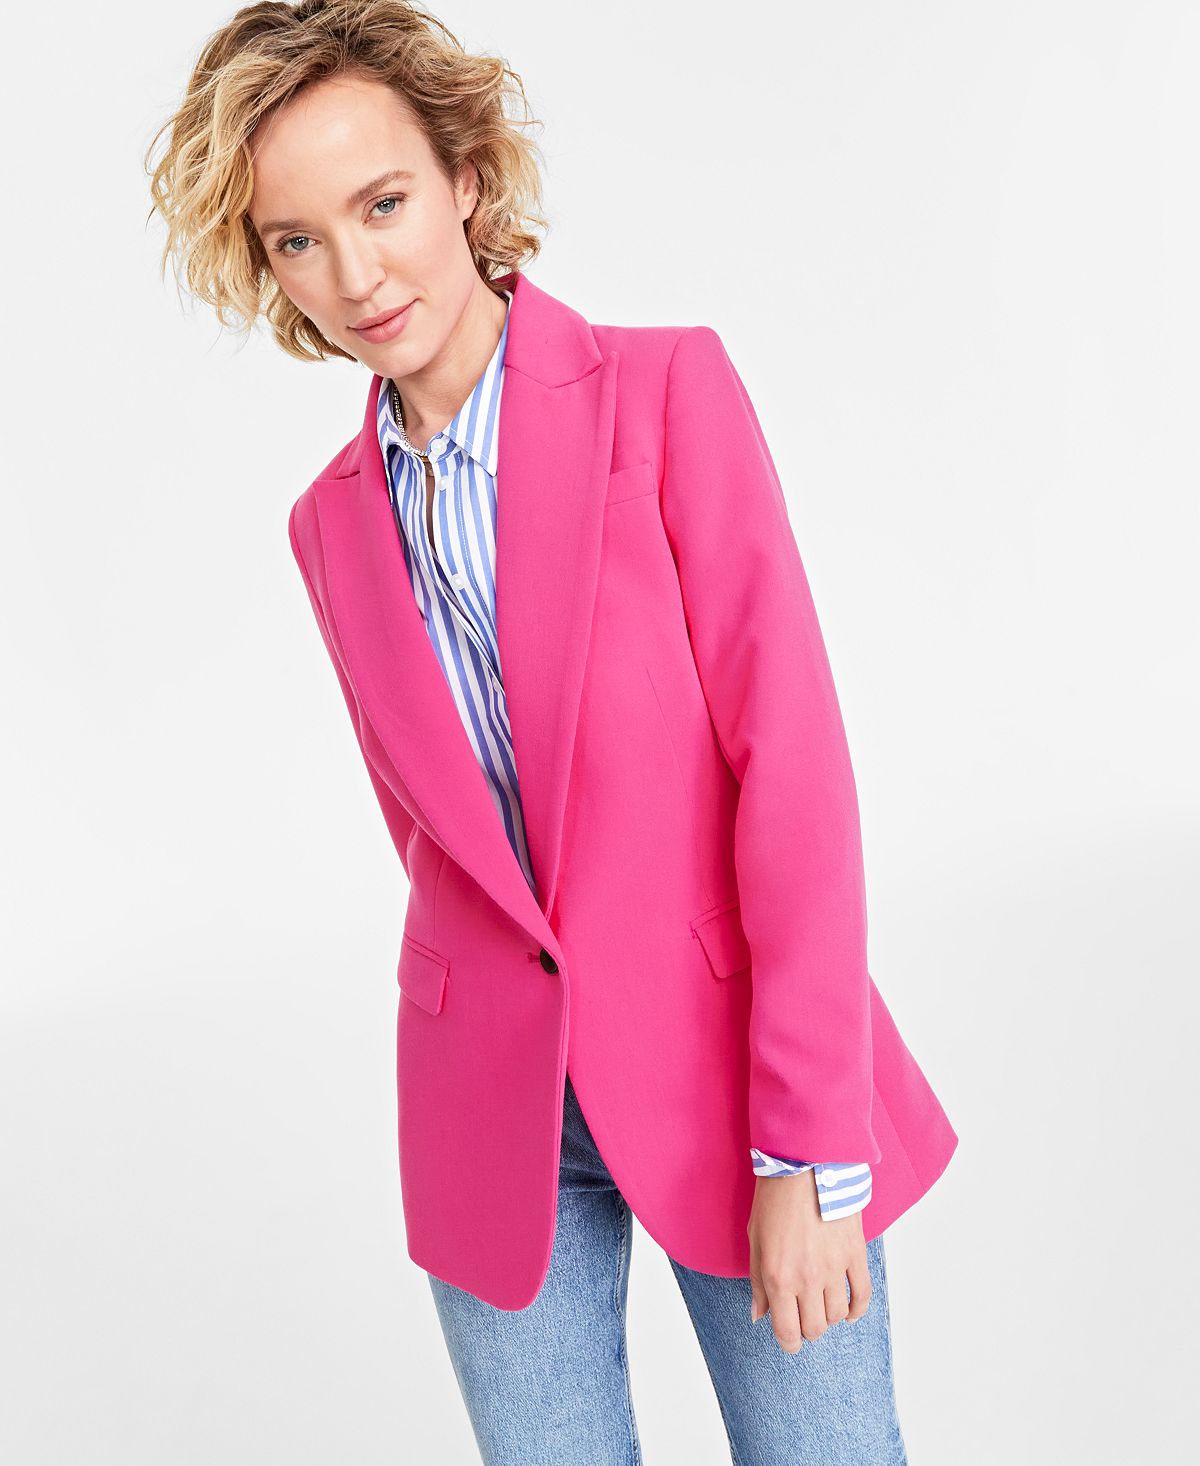 Женский однотонный пиджак-бойфренд на одной пуговице On 34th однотонный пиджак на одной пуговице tommy hilfiger цвет rosette